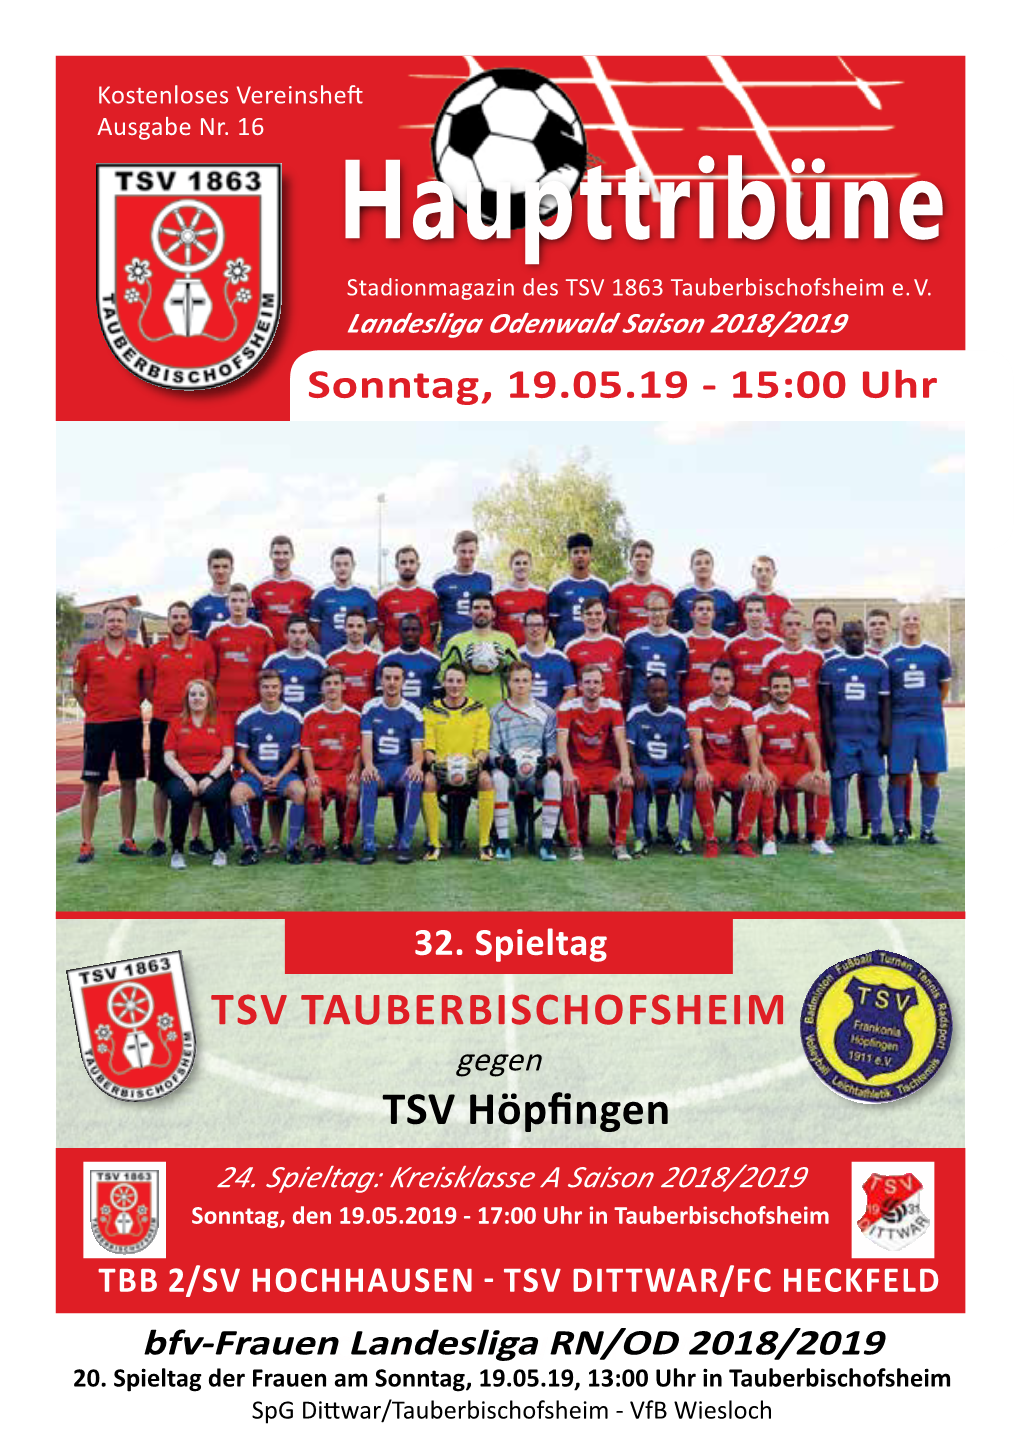 Haupttribüne Stadionmagazin Des TSV 1863 Tauberbischofsheim E